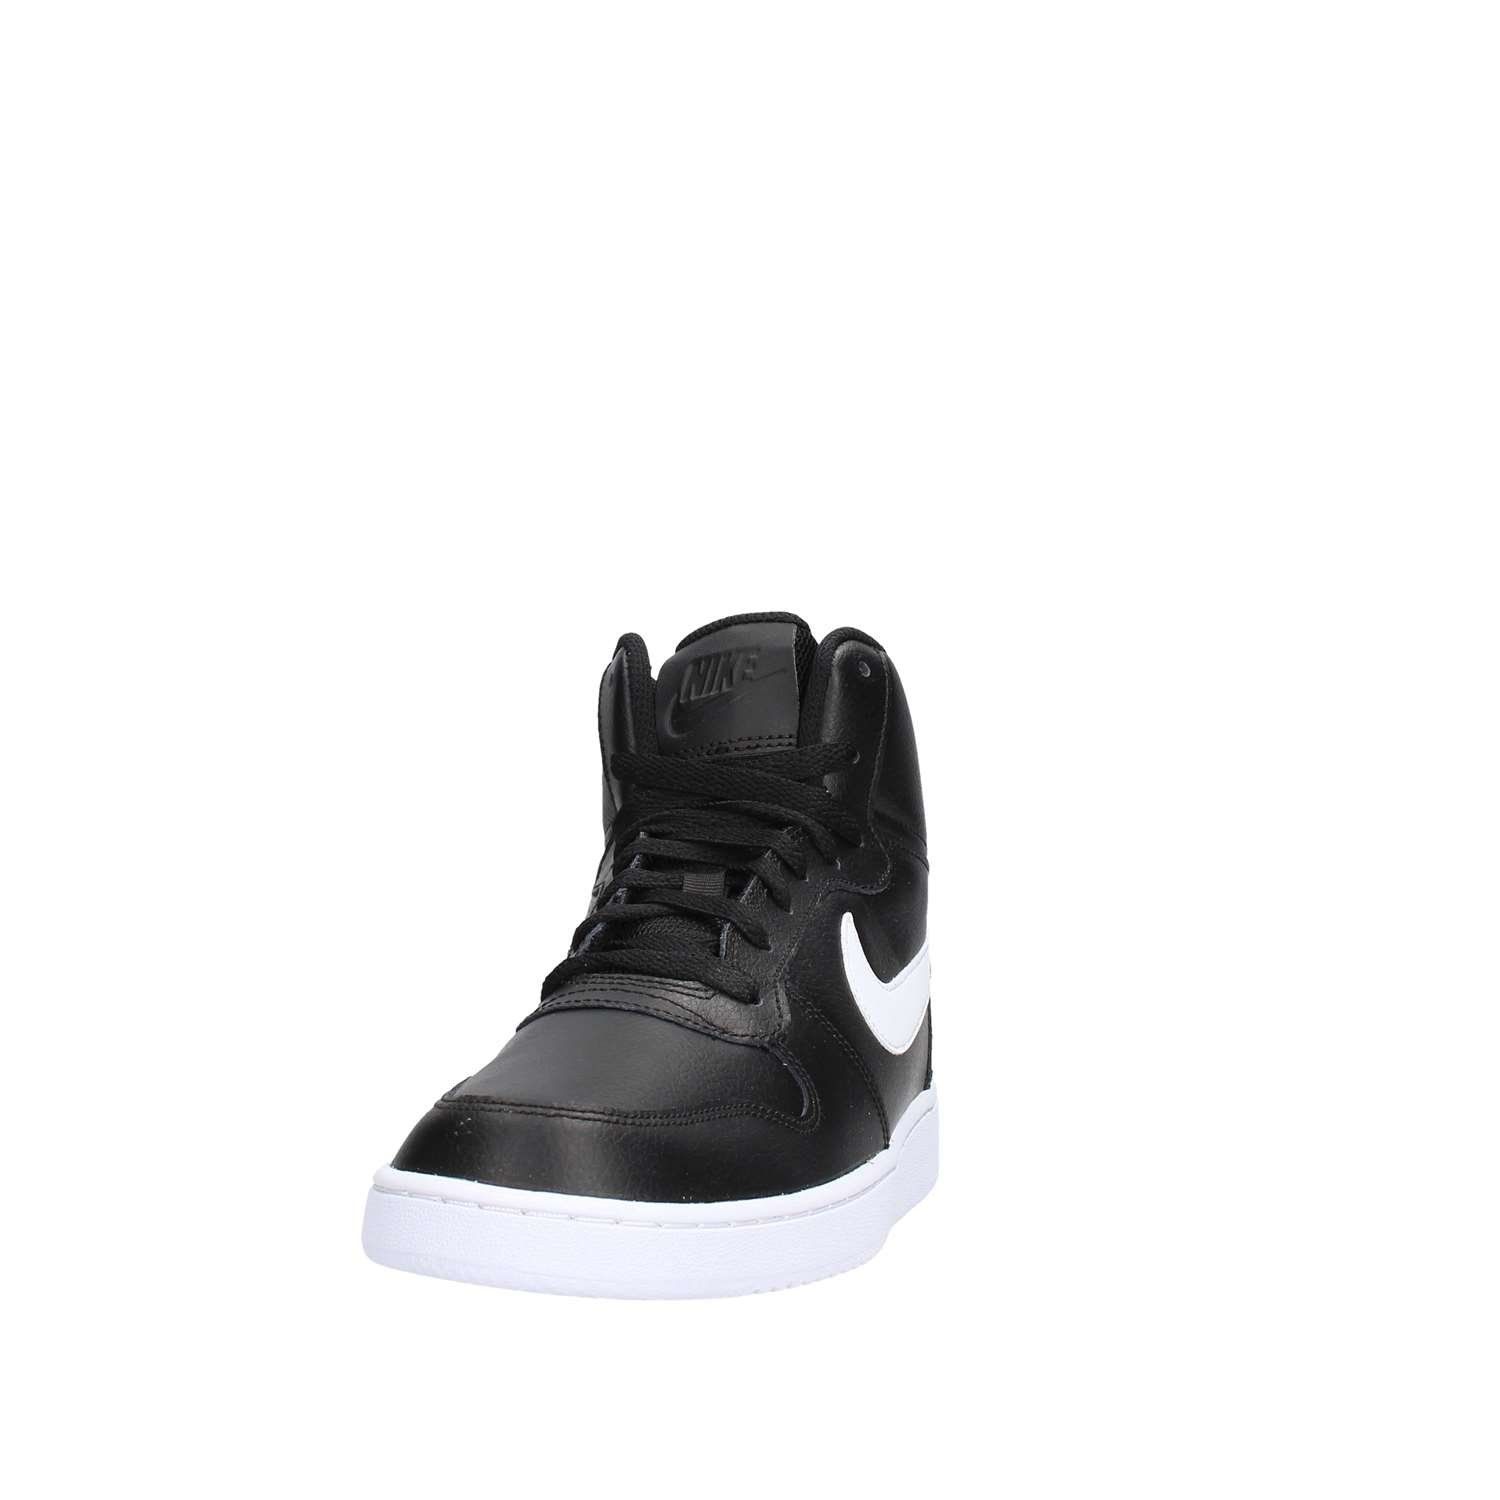 [ナイキ] Nike - Ebernon Mid [並行輸入品] - AQ1773002 - Color: 黒 - Size: 27.0 [ブラック] [27.0 cm]